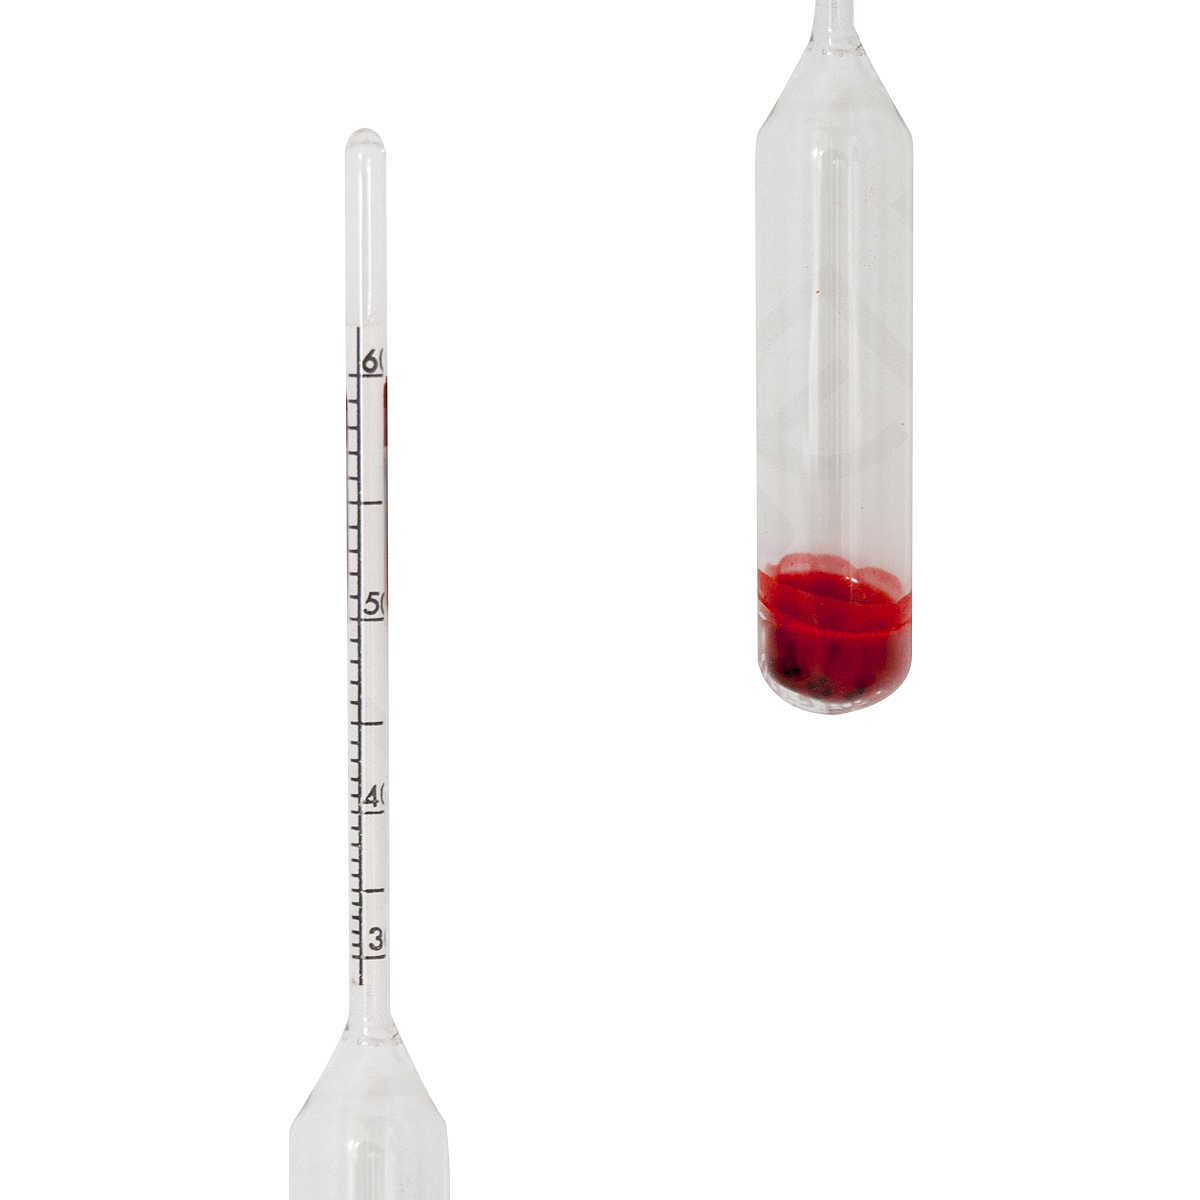 Ulisem Alcoomètre 3pcs avec thermomètre Alcoomètre Teneur en alcool 0-40,  40-70, 70-100 Vol